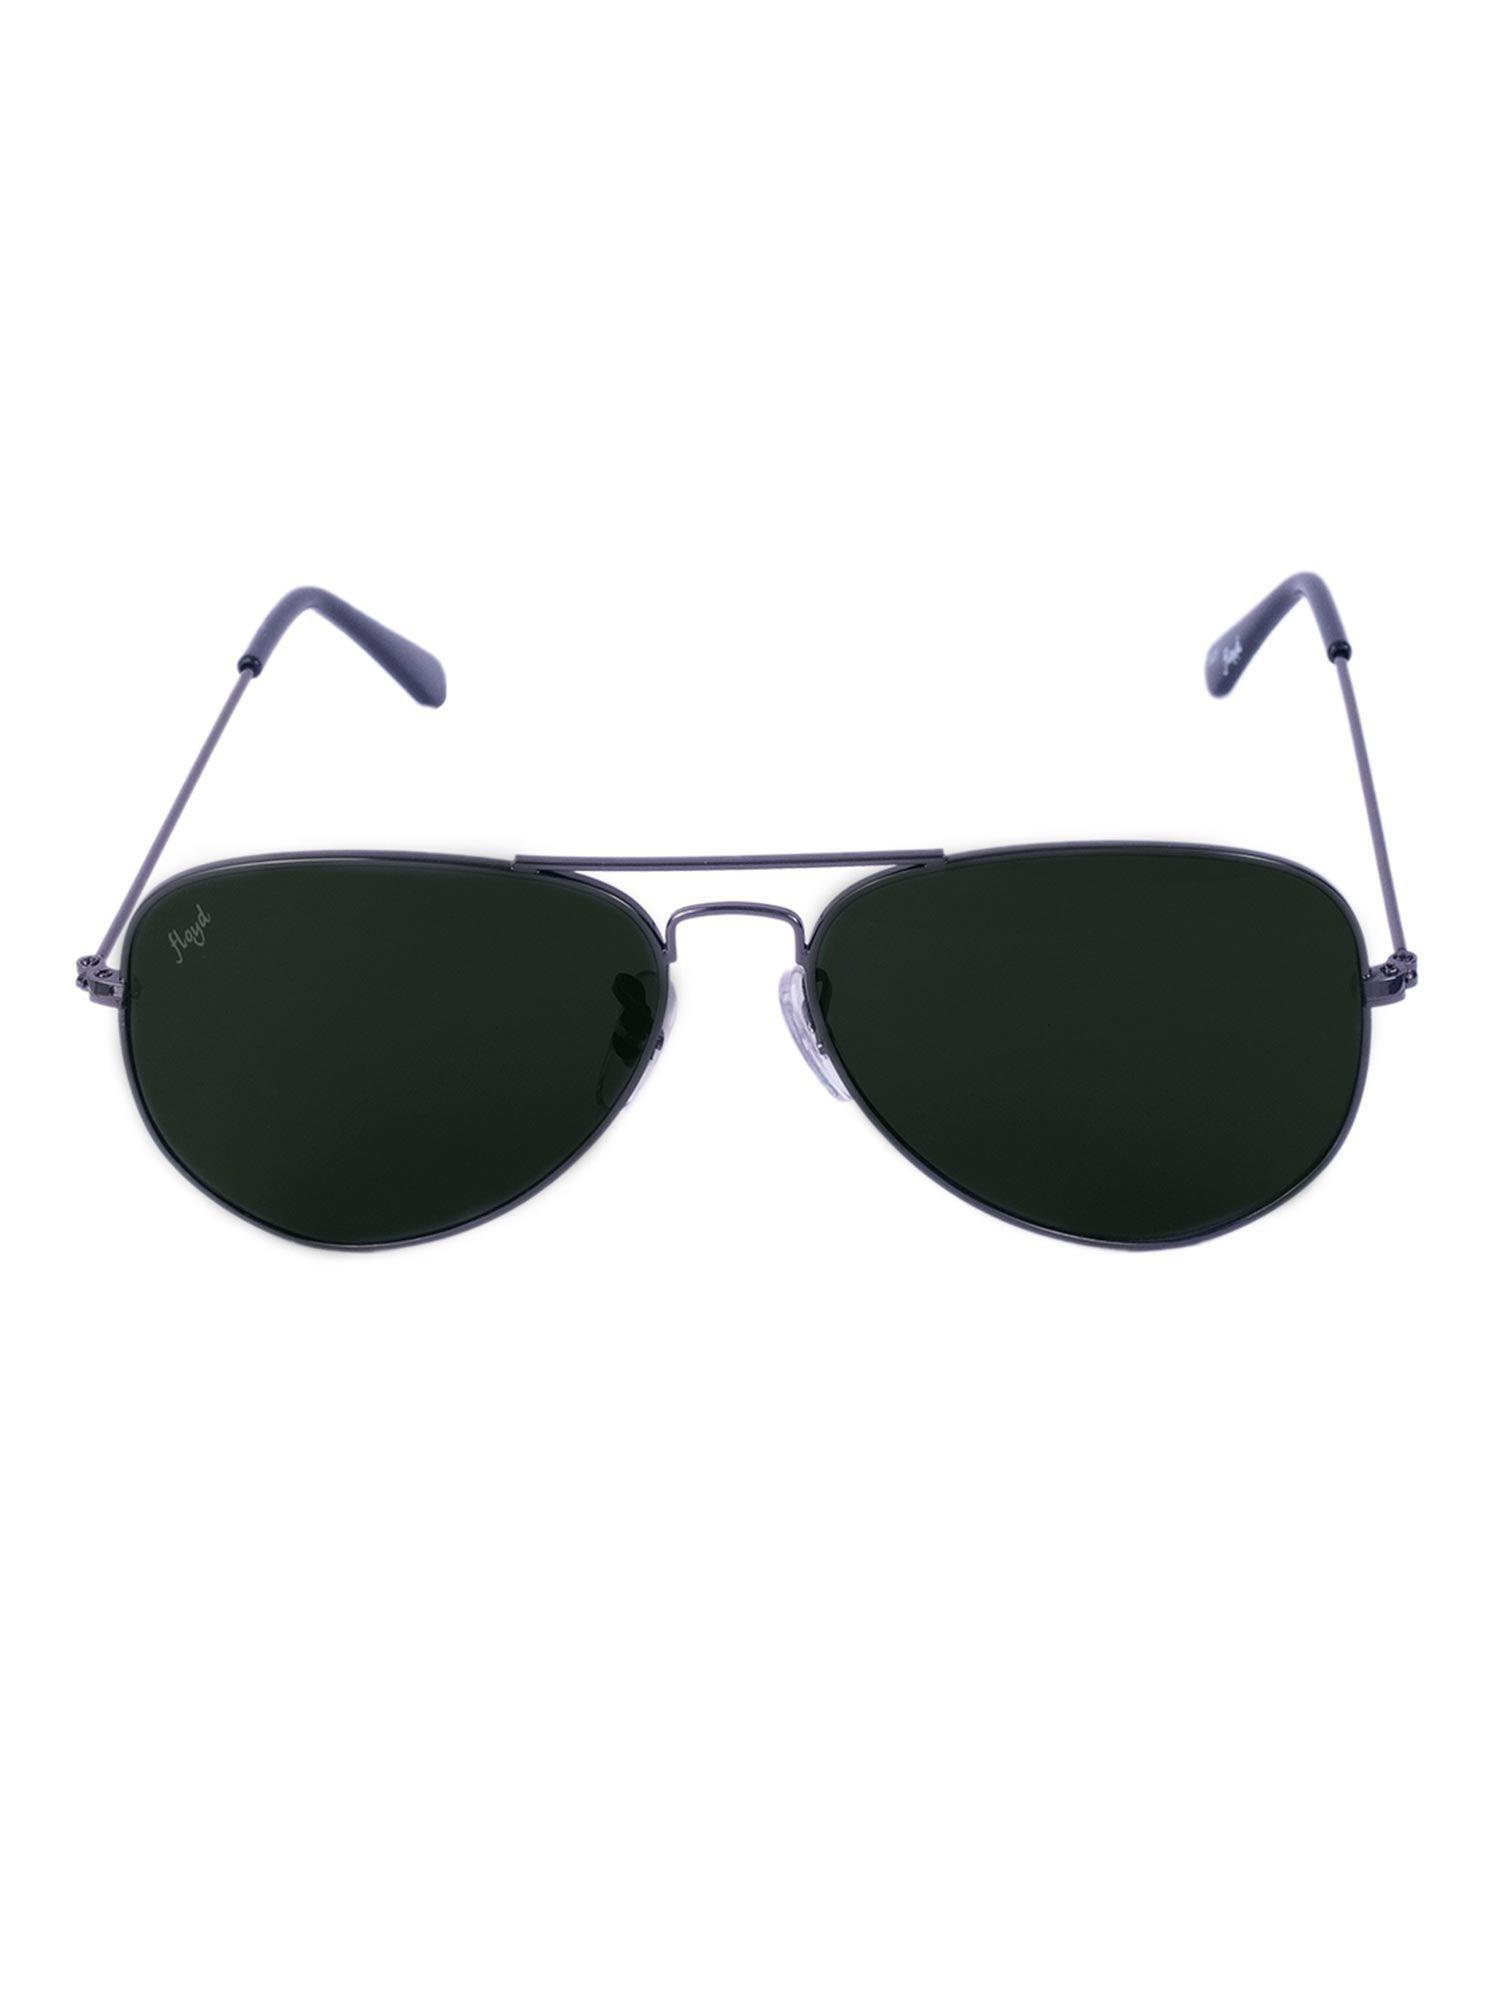 green lense metallic frame aviator sunglasses mo_gmtl_grn